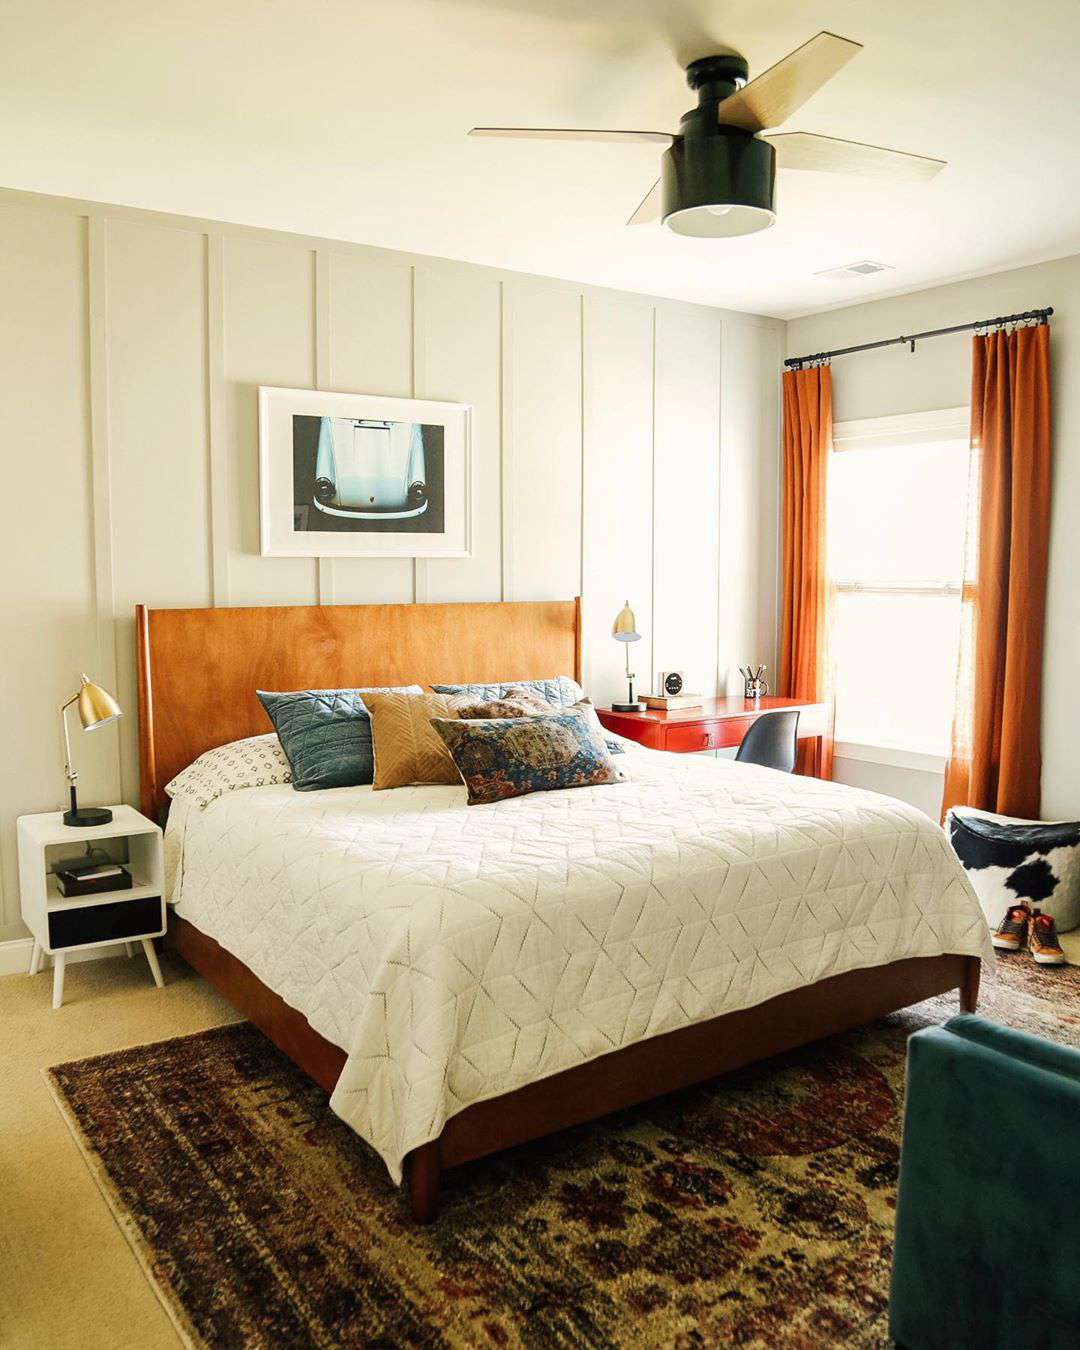 Dormitorio con paredes beige y detalles en naranja.